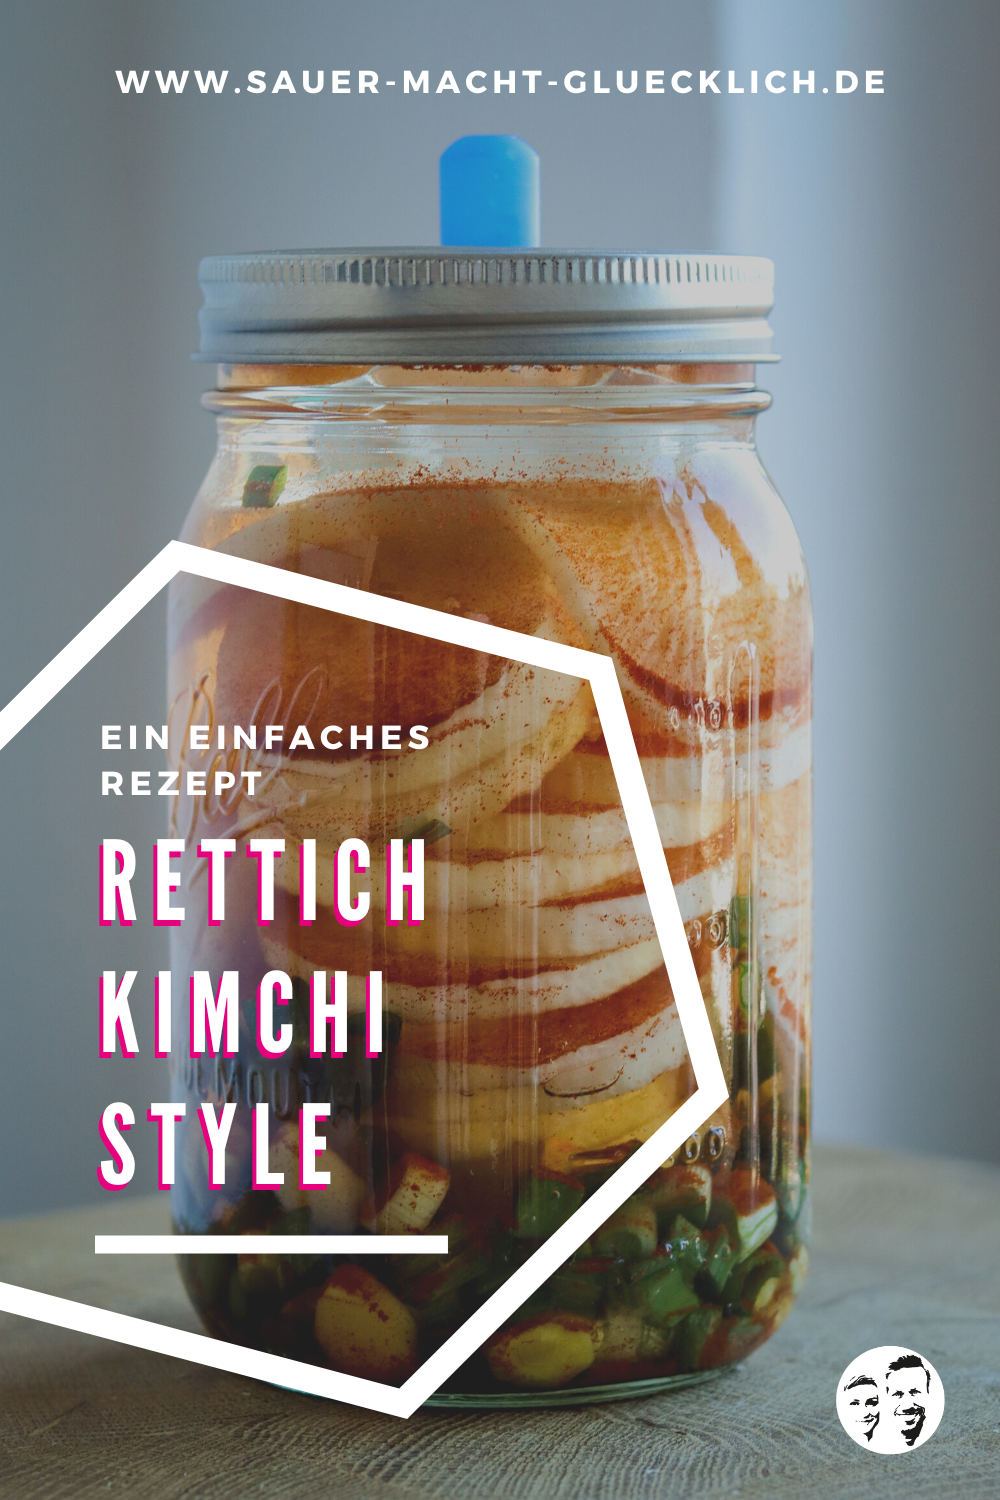 Fermentierter Rettich im Kimchi Style - So einfach geht’s